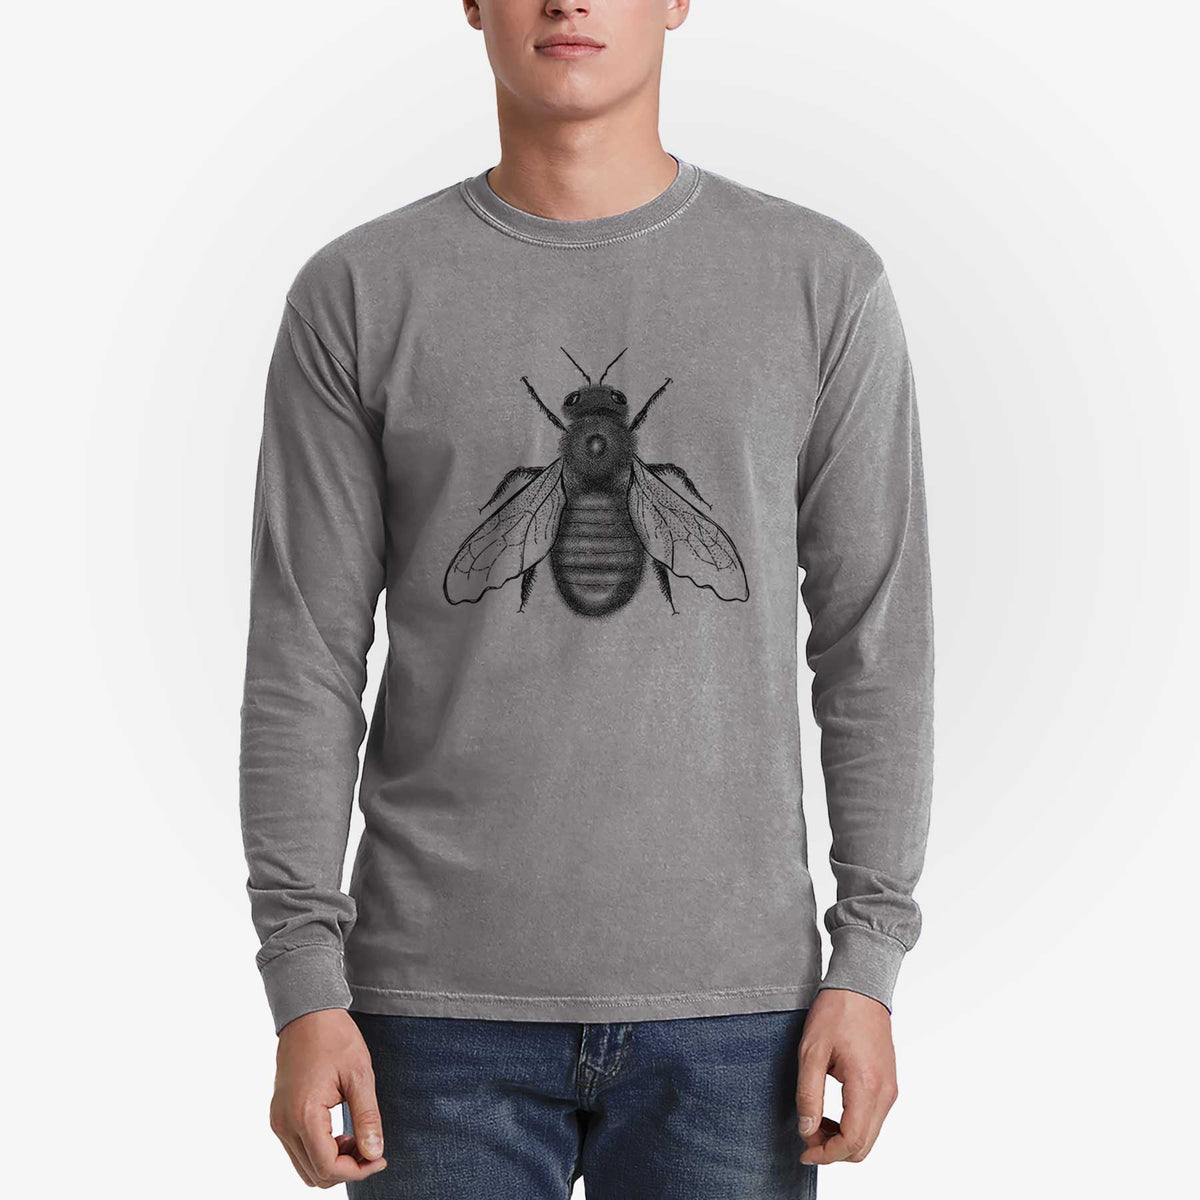 Xylocopa Virginica - Carpenter Bee - Heavyweight 100% Cotton Long Sleeve